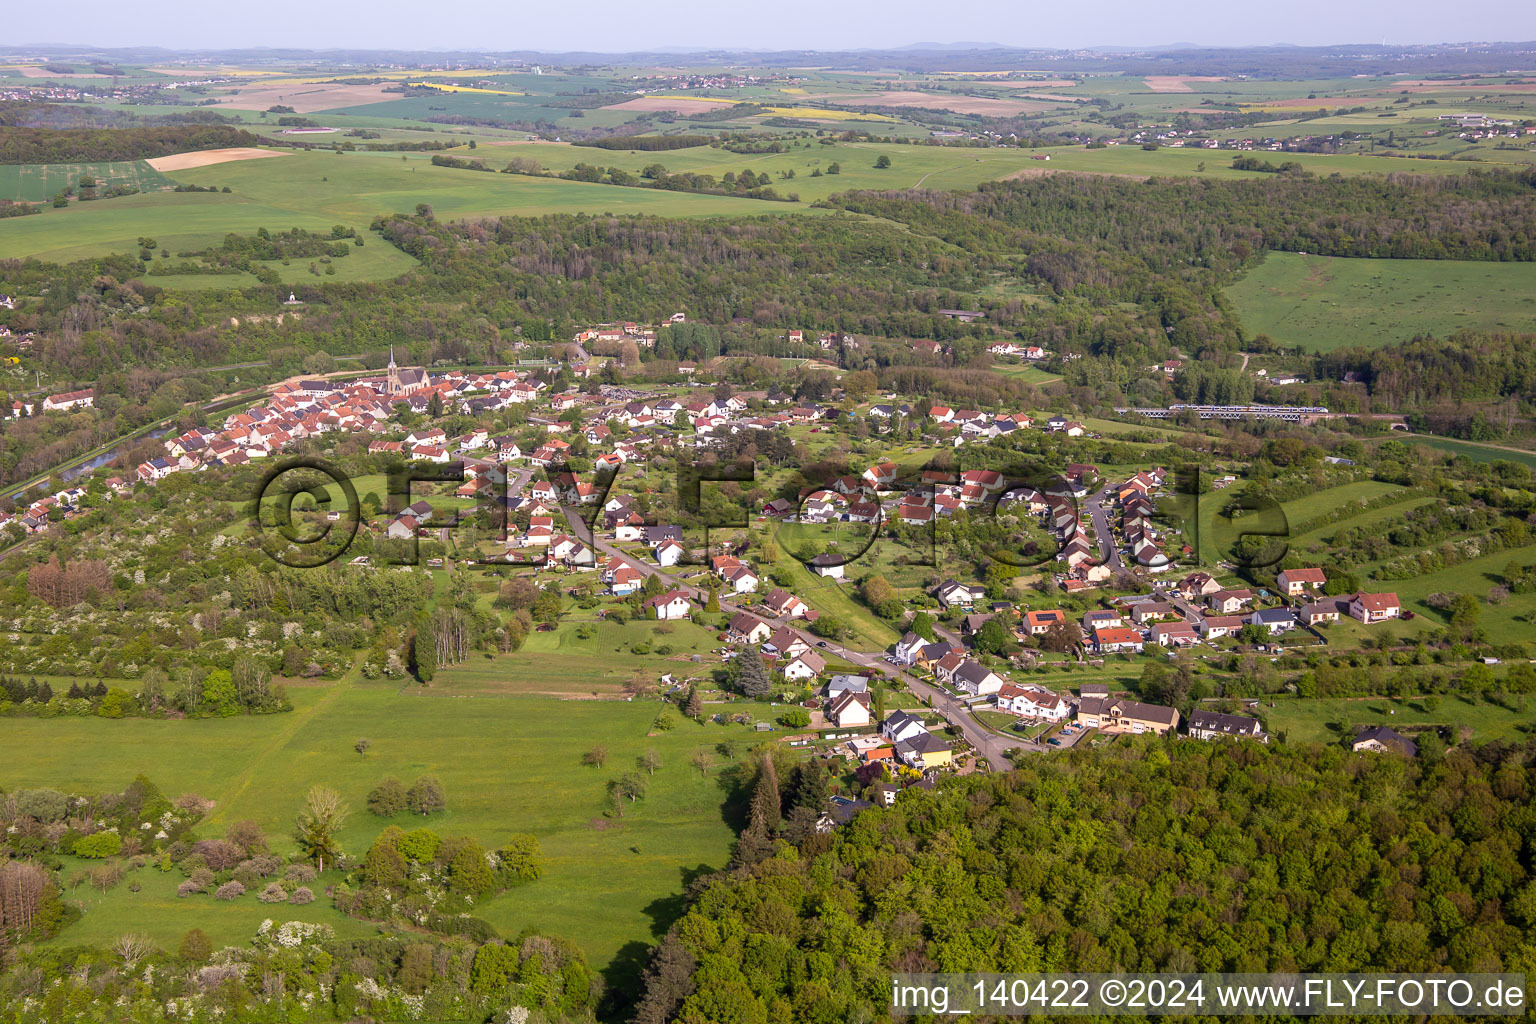 Vue aérienne de De l'ouest à Wittring dans le département Moselle, France